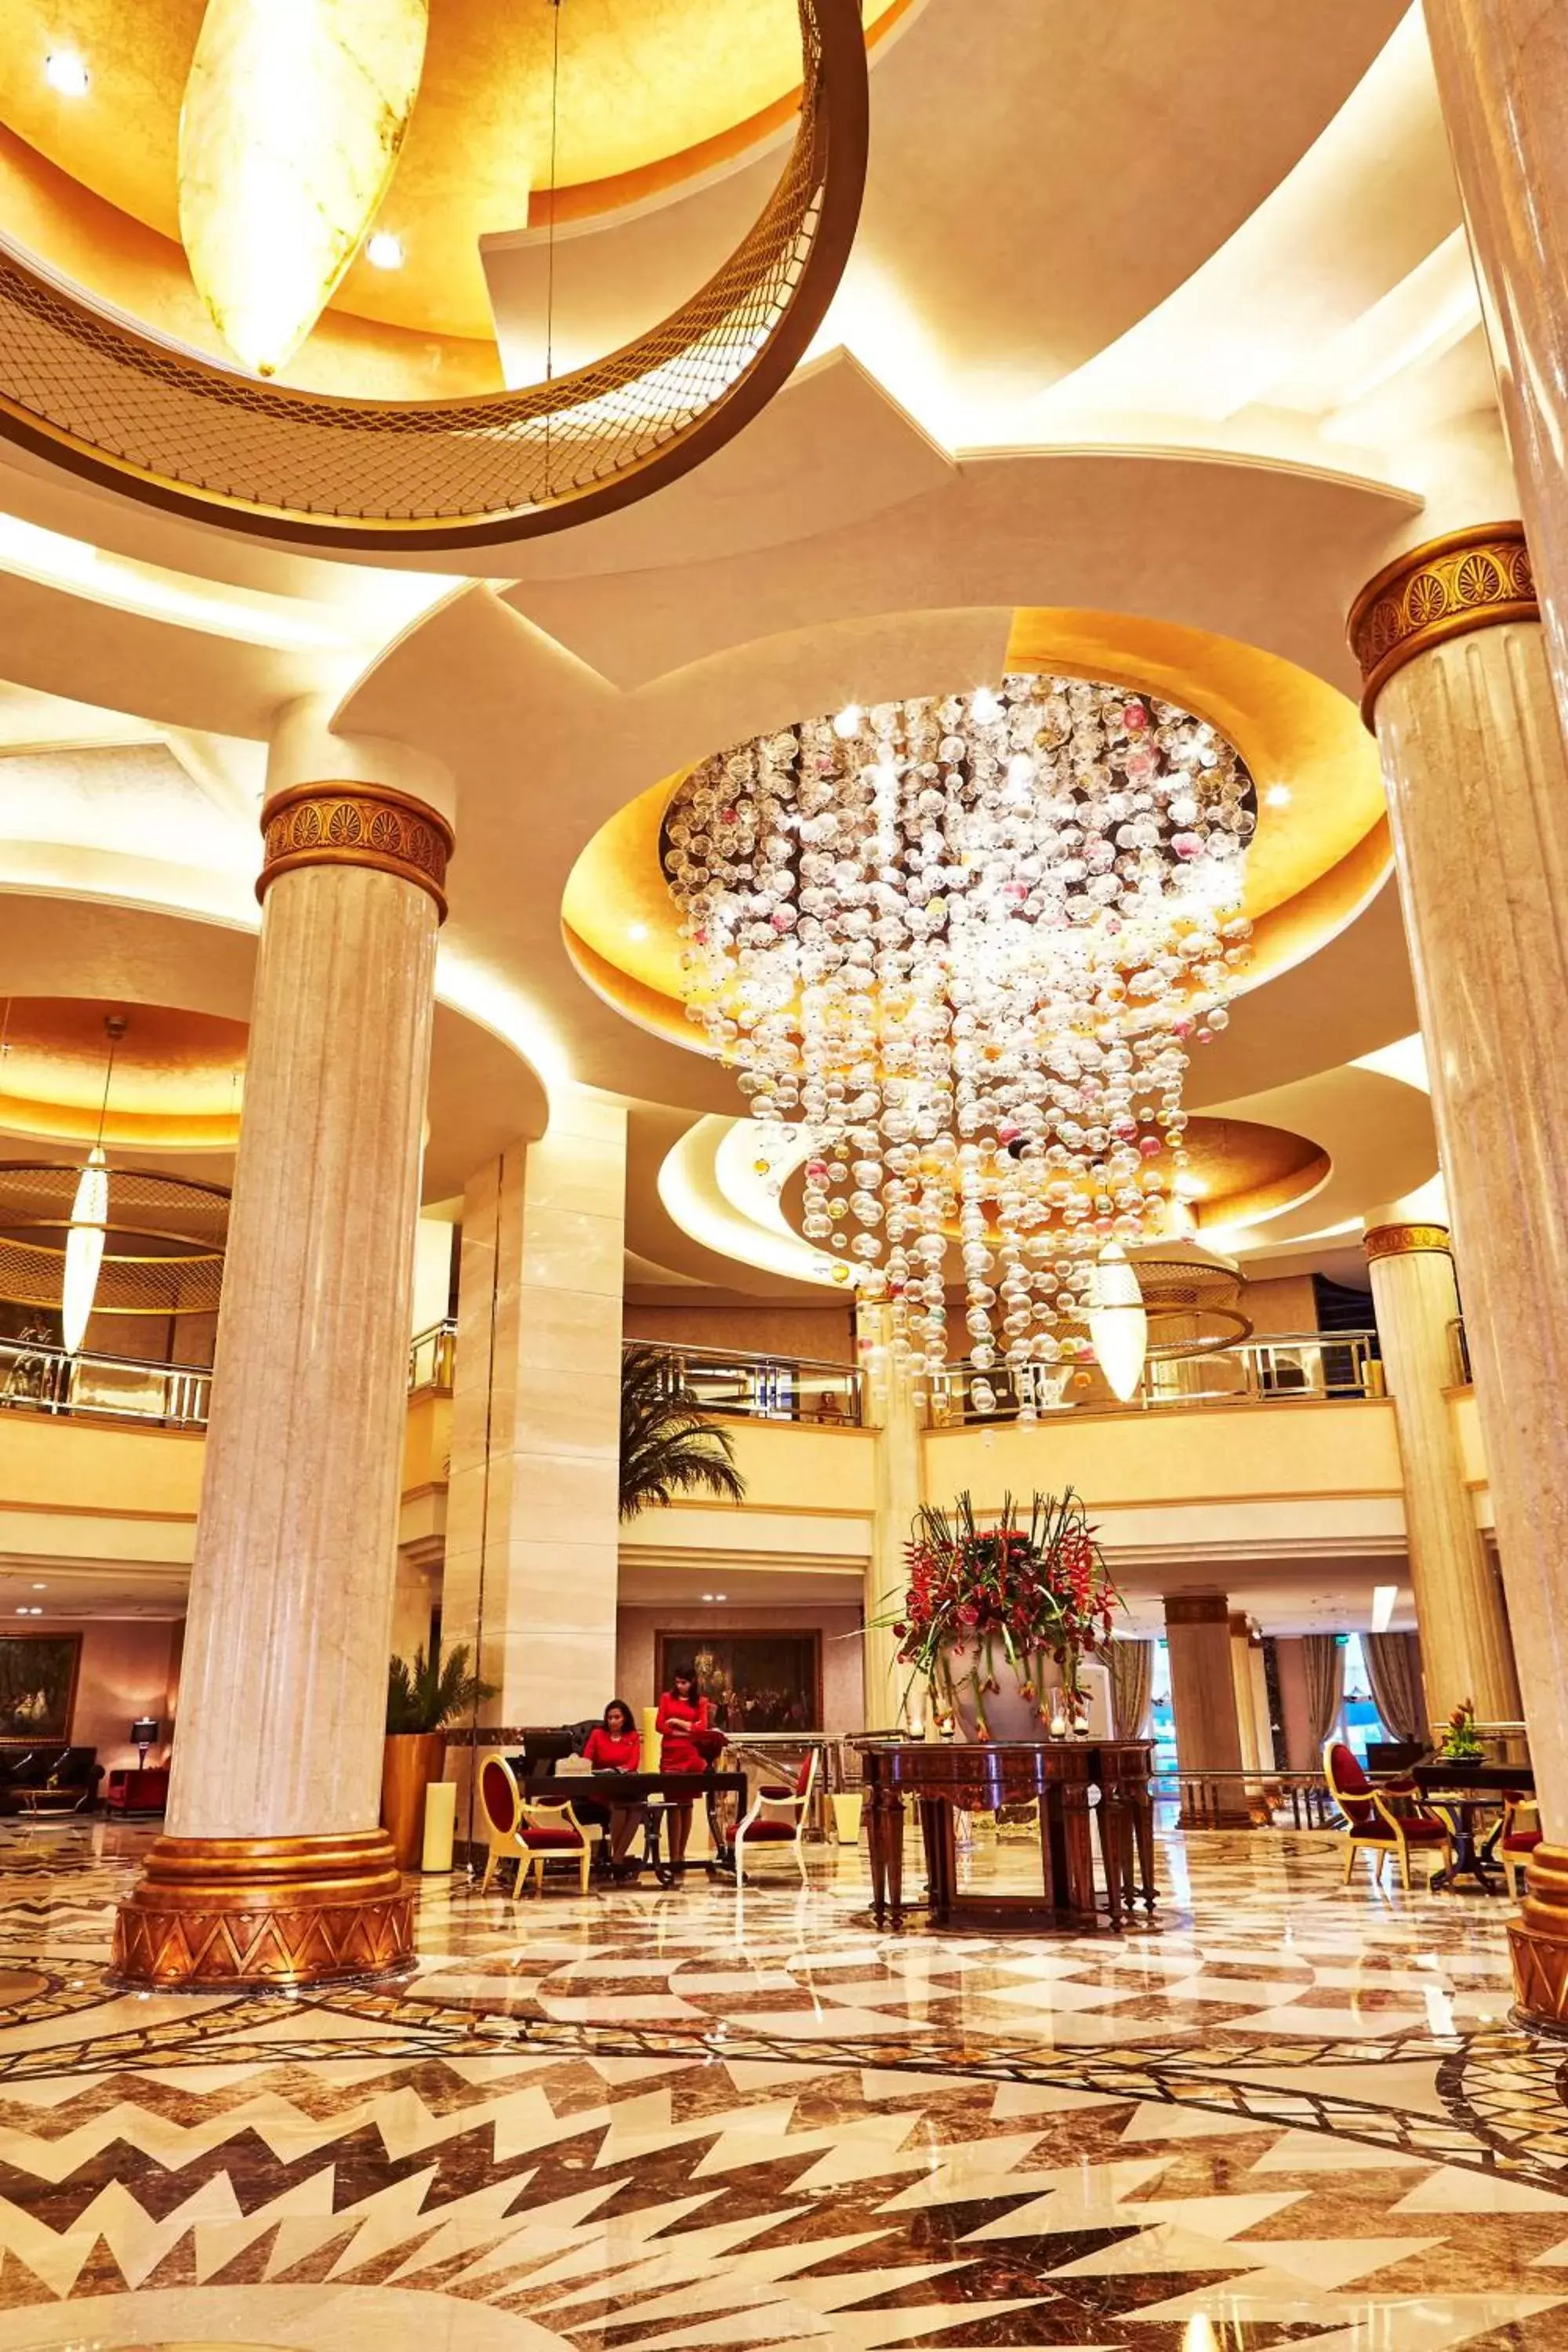 Lobby or reception, Banquet Facilities in Royal Maxim Palace Kempinski Cairo